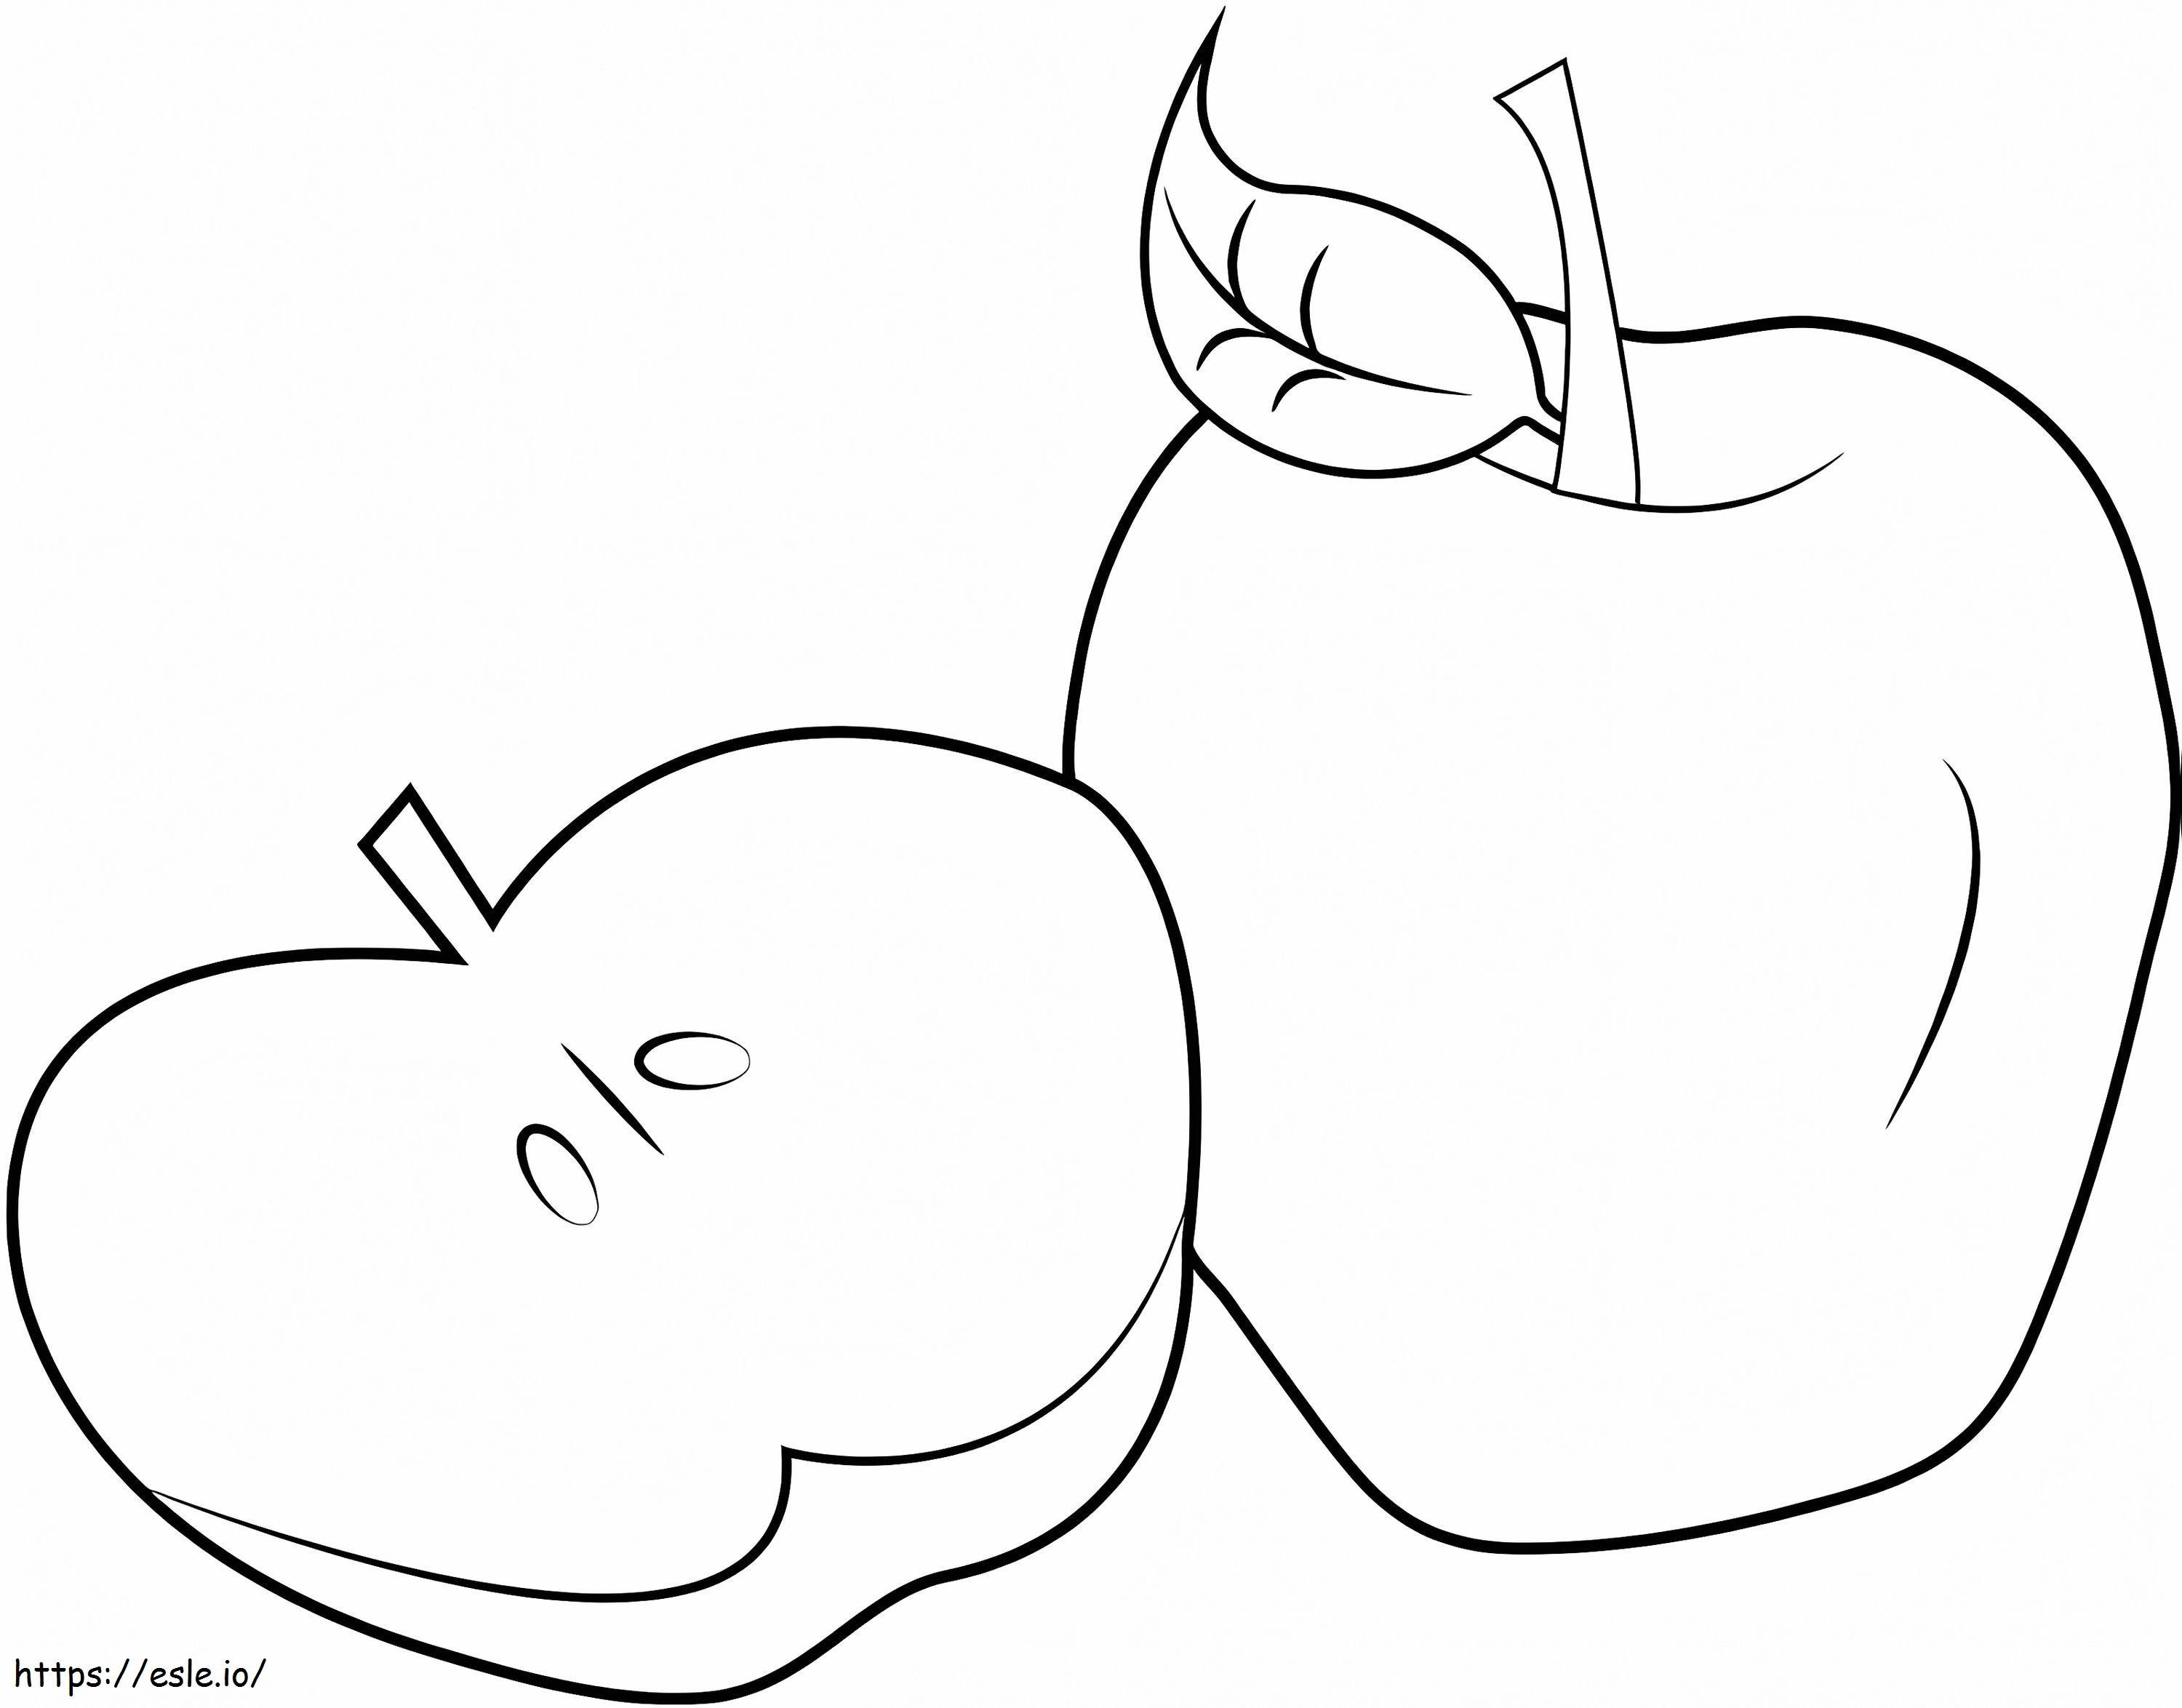 Manzana en rodajas y una manzana para colorear